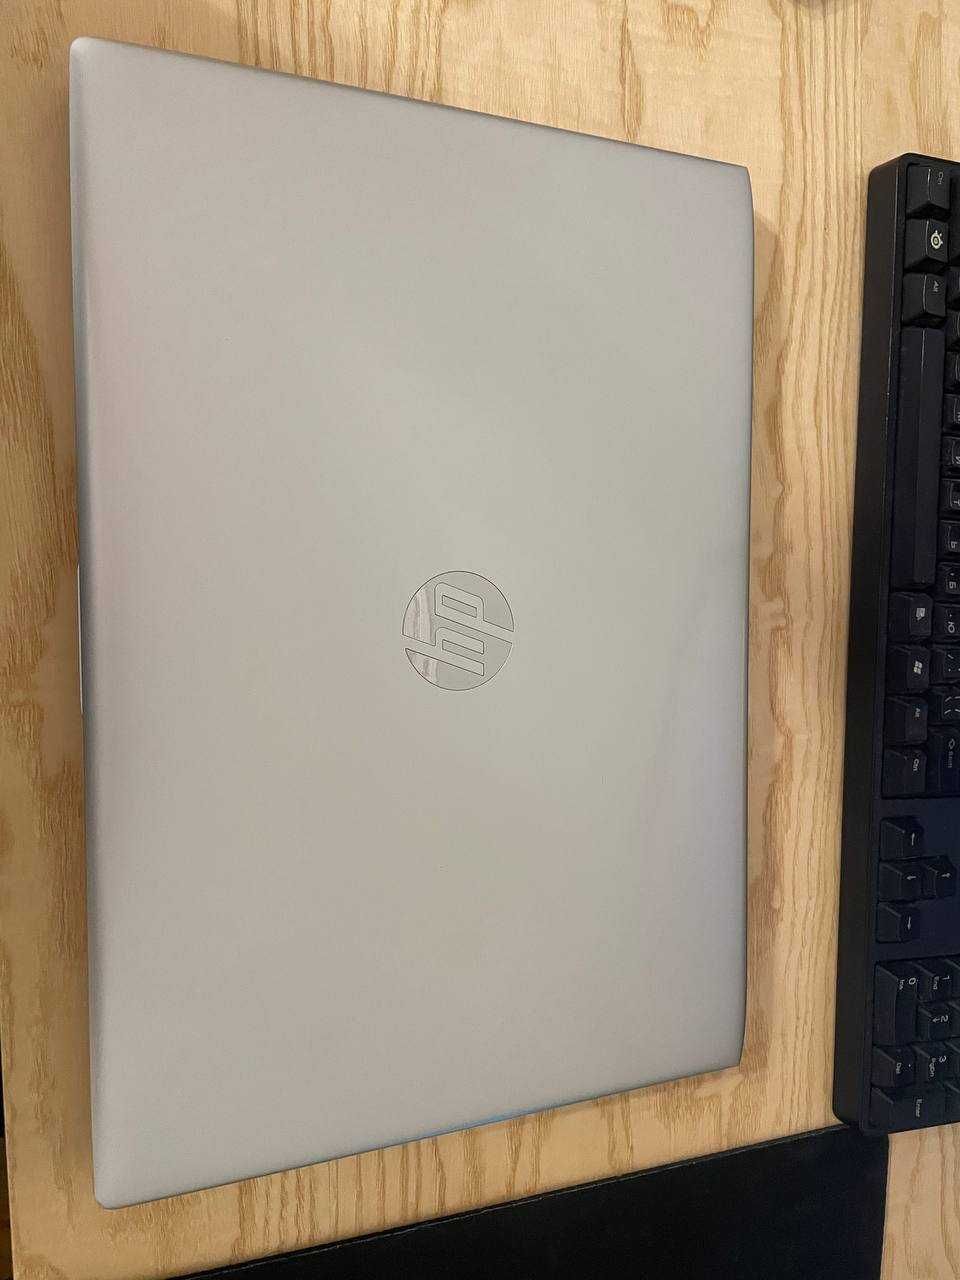 HP ProBook 450 G5 Silver i7 8550U 1.8Ghz / 8Gb / 256Gb SSD